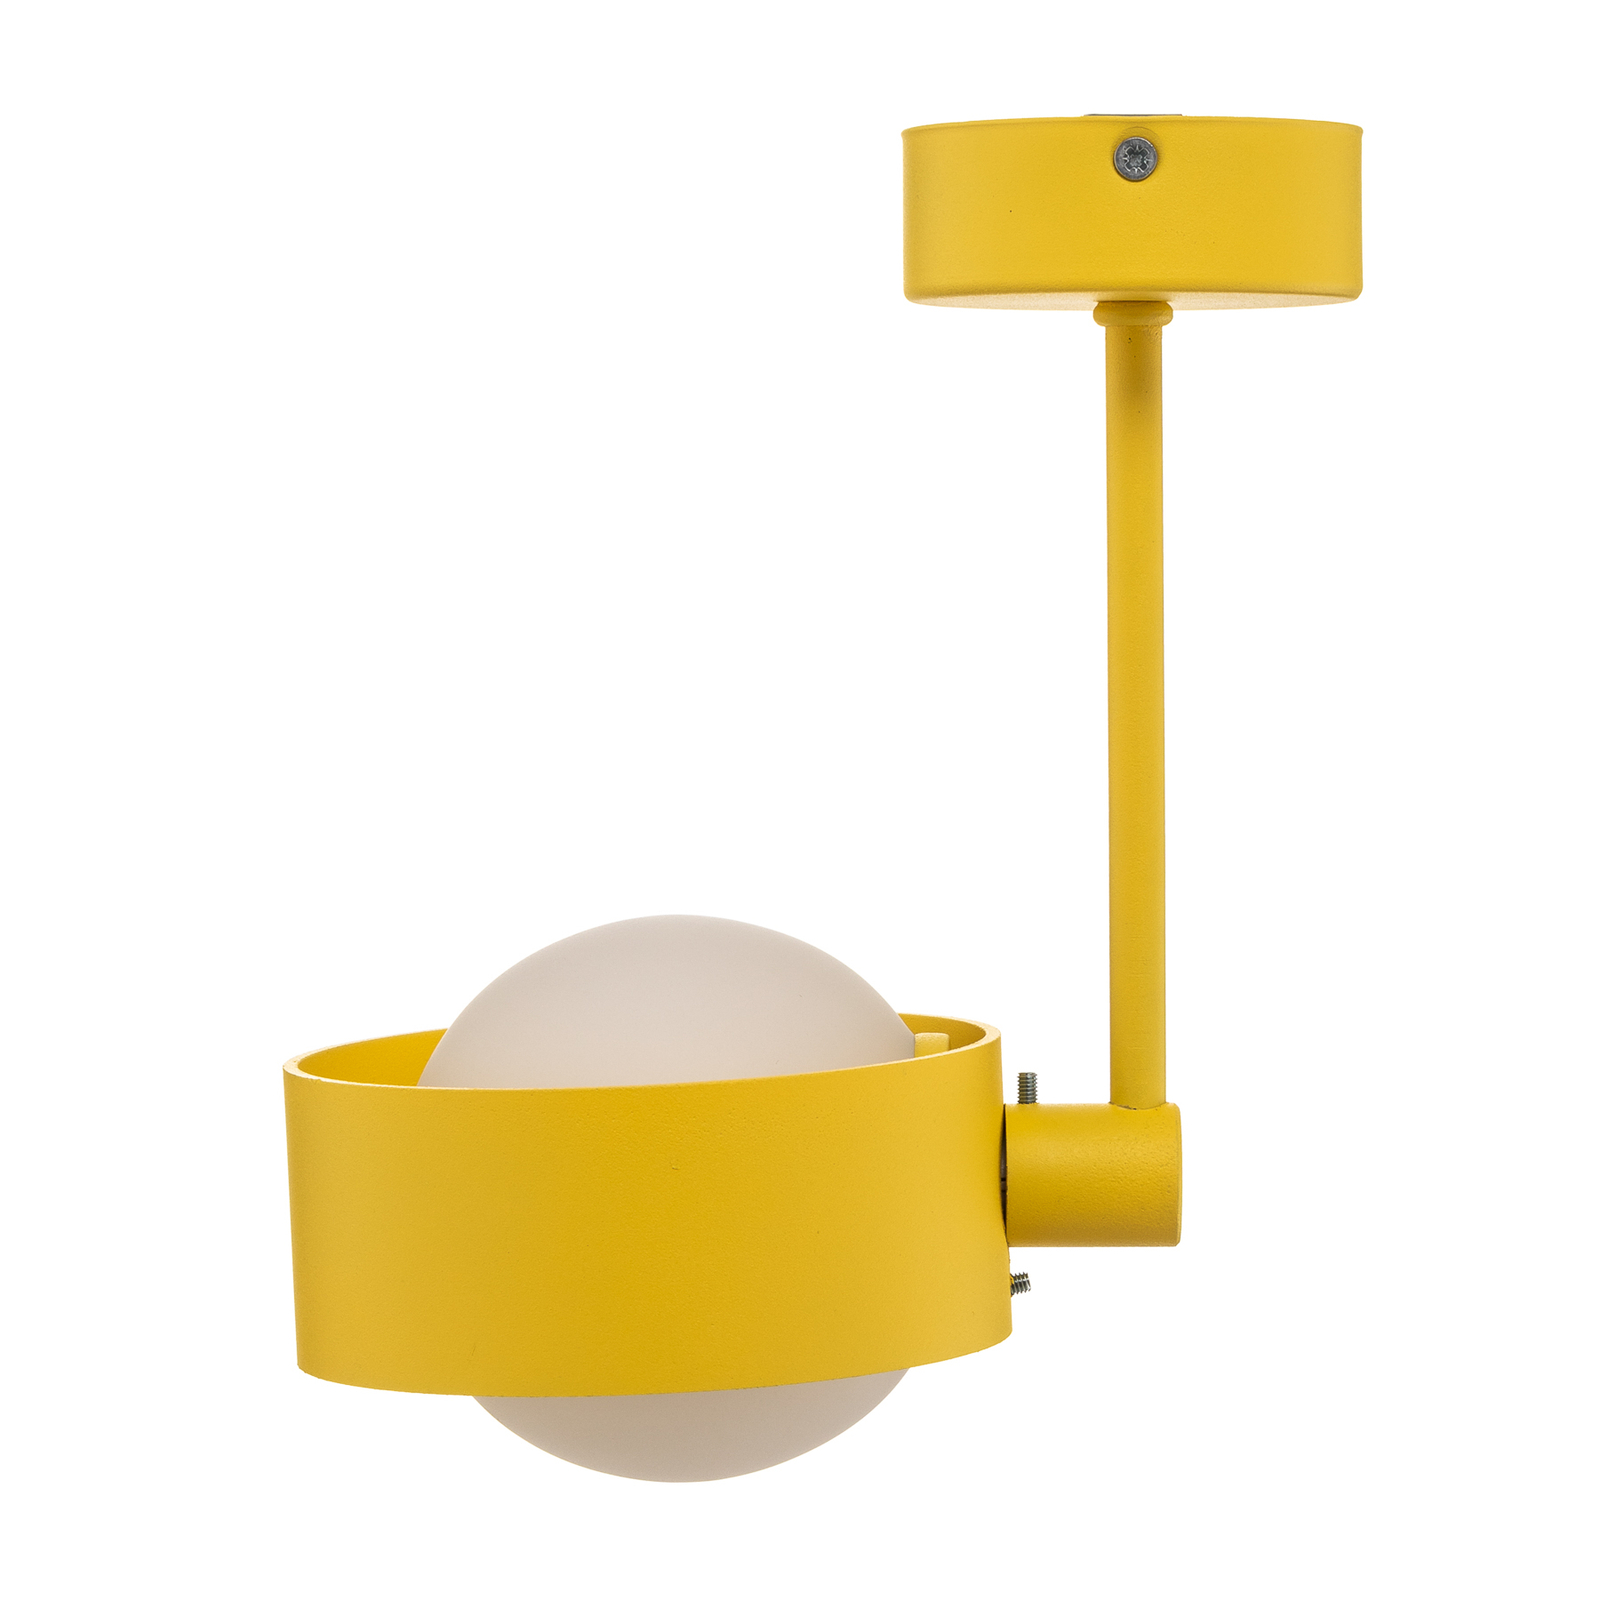 Taklampa Mado av stål, gul, 1 lampa